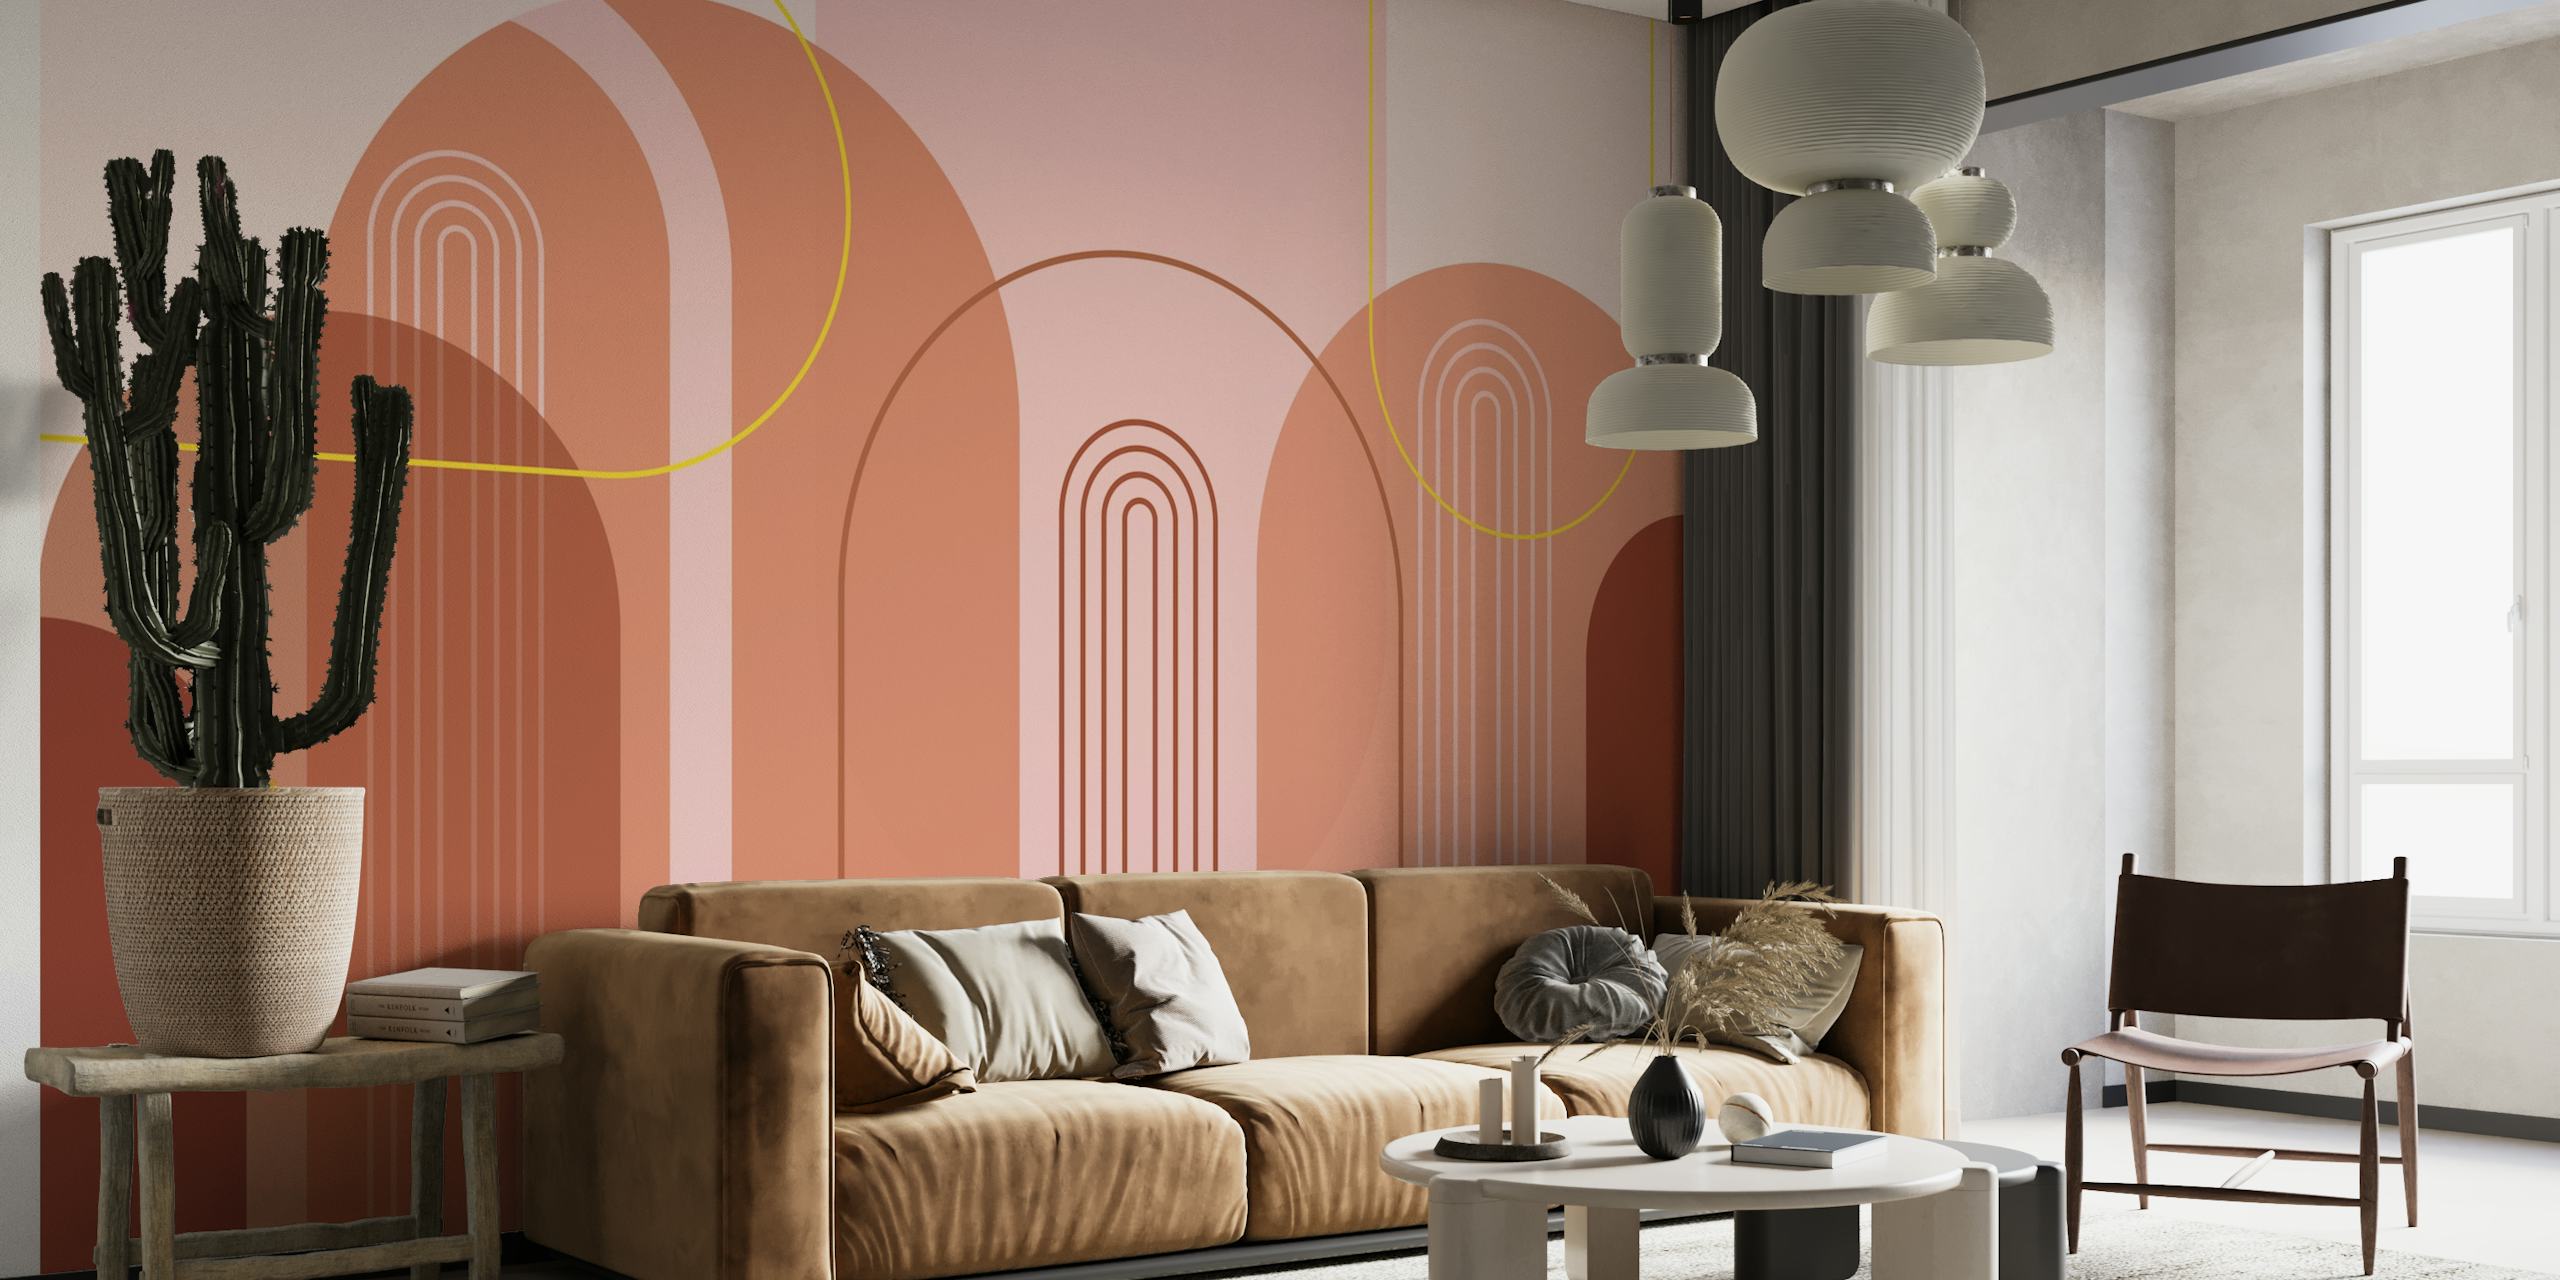 Abstrakt tapet med moderna valv från mitten av århundradet med rosa, beige, rödbrun och guldfärger